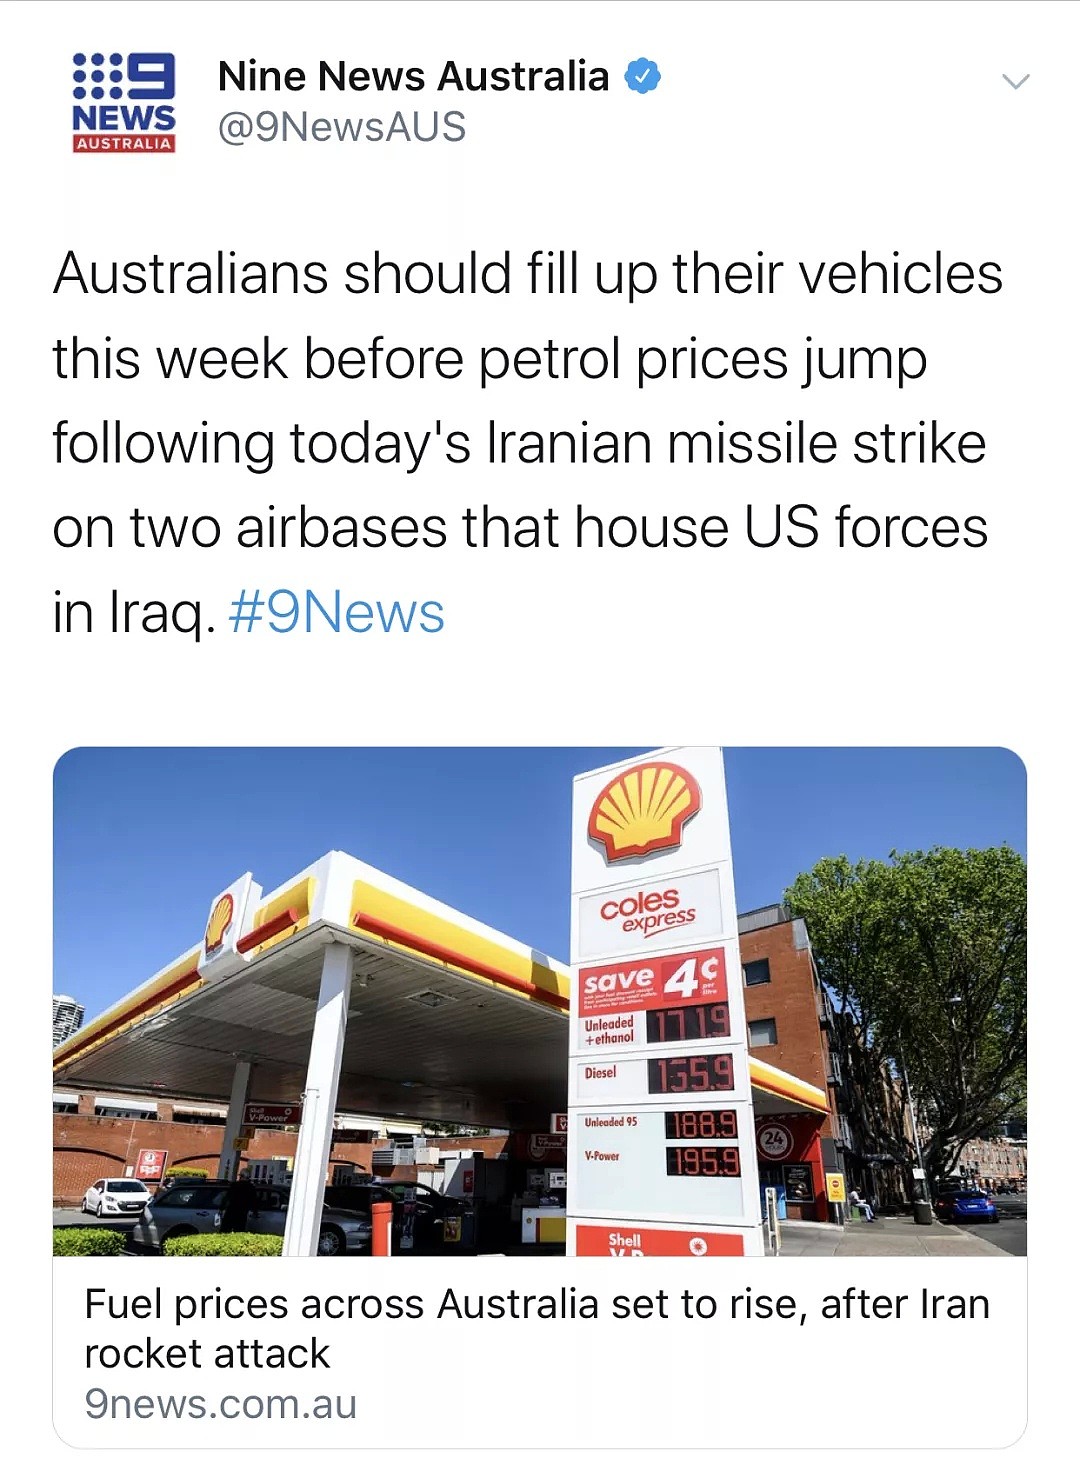 赶快加满油！伊朗报复，全球油价震荡！澳洲油价将在未来一周内飙升！专家劝澳洲人尽快加油！澳航取消往伊朗航班！ - 17